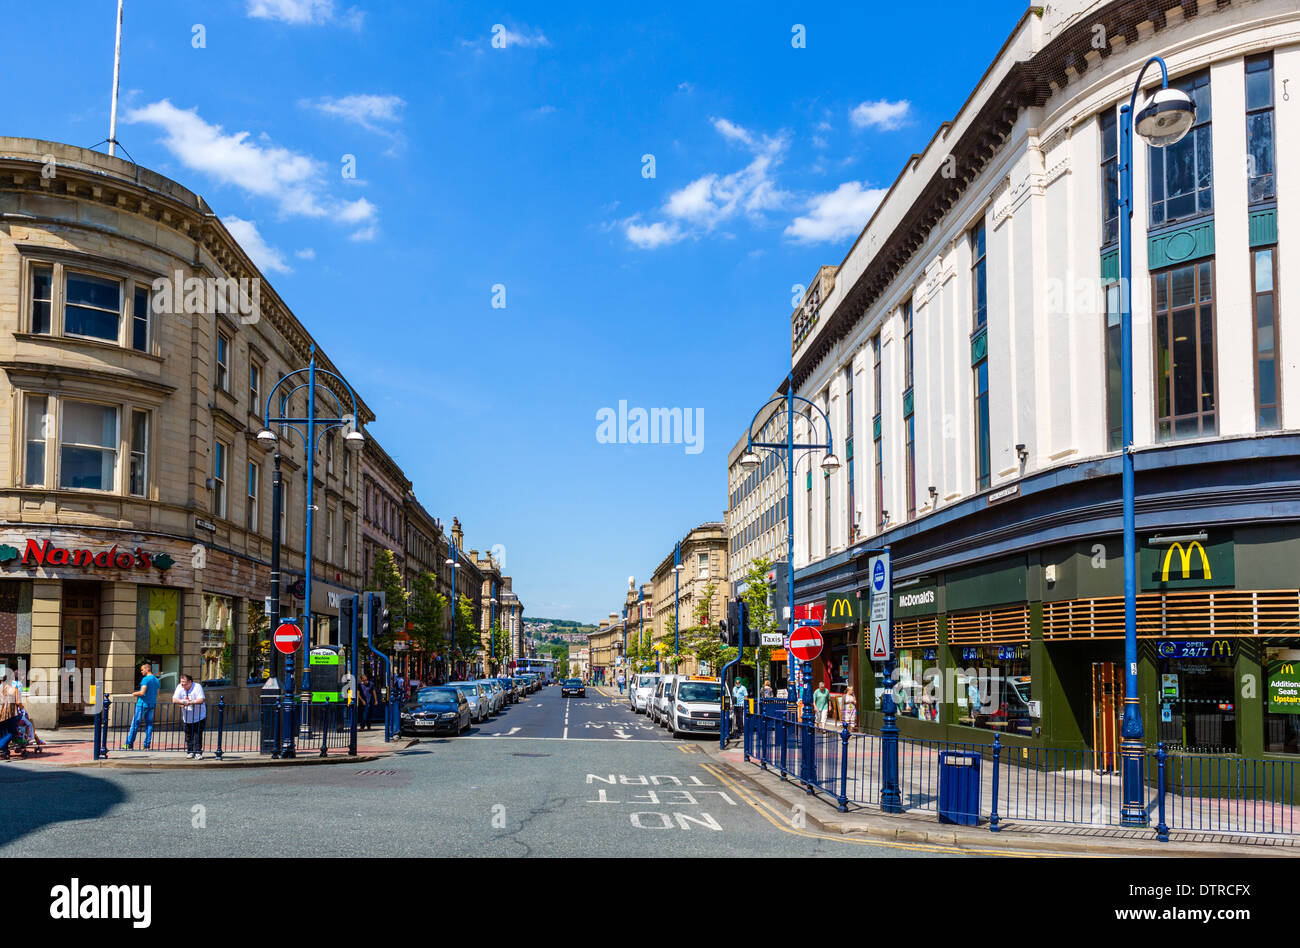 Negozi e ristoranti su John William Street nel centro della città, Huddersfield, West Yorkshire, Englsnd, REGNO UNITO Foto Stock